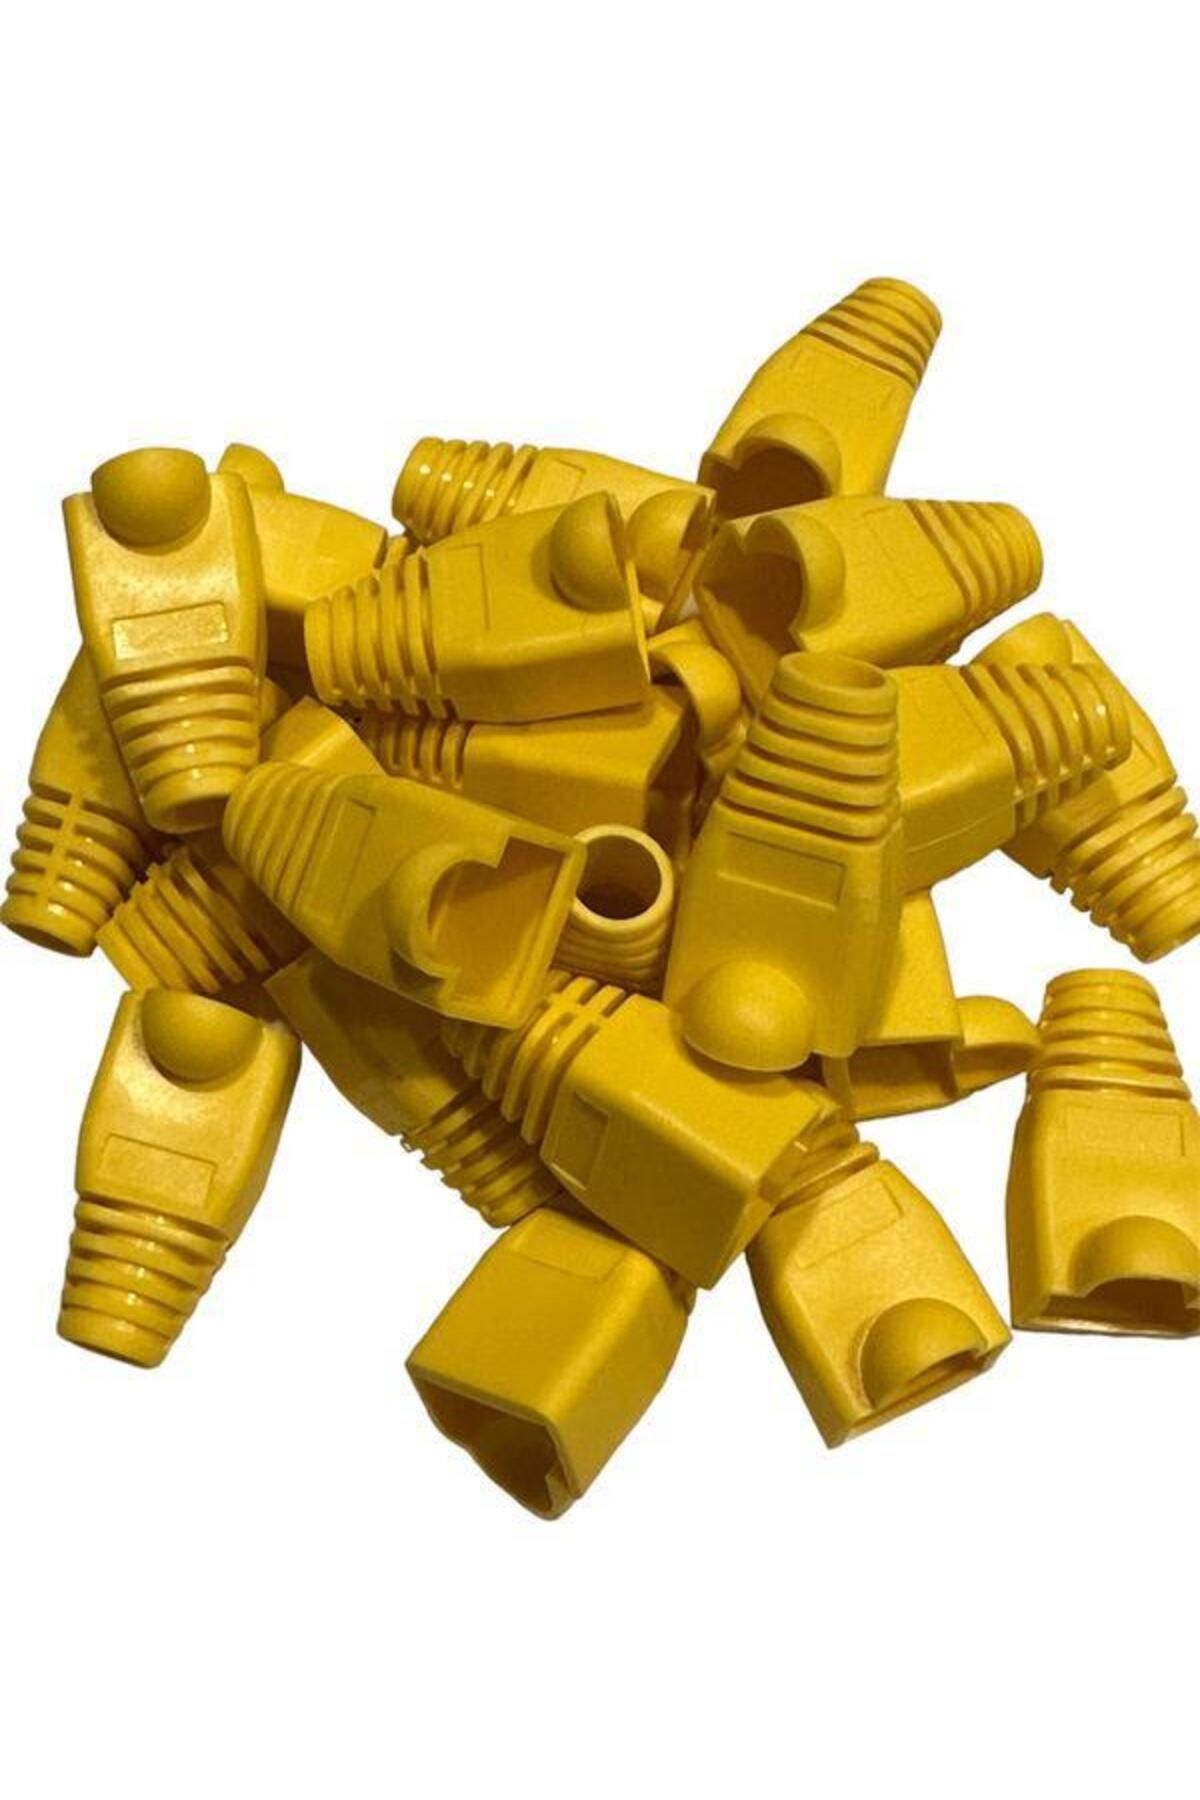 KEEPRO Sarı cat5 kılıf sarı cat6 kılıf rj45 koruma kılıfı sarı 100 adet